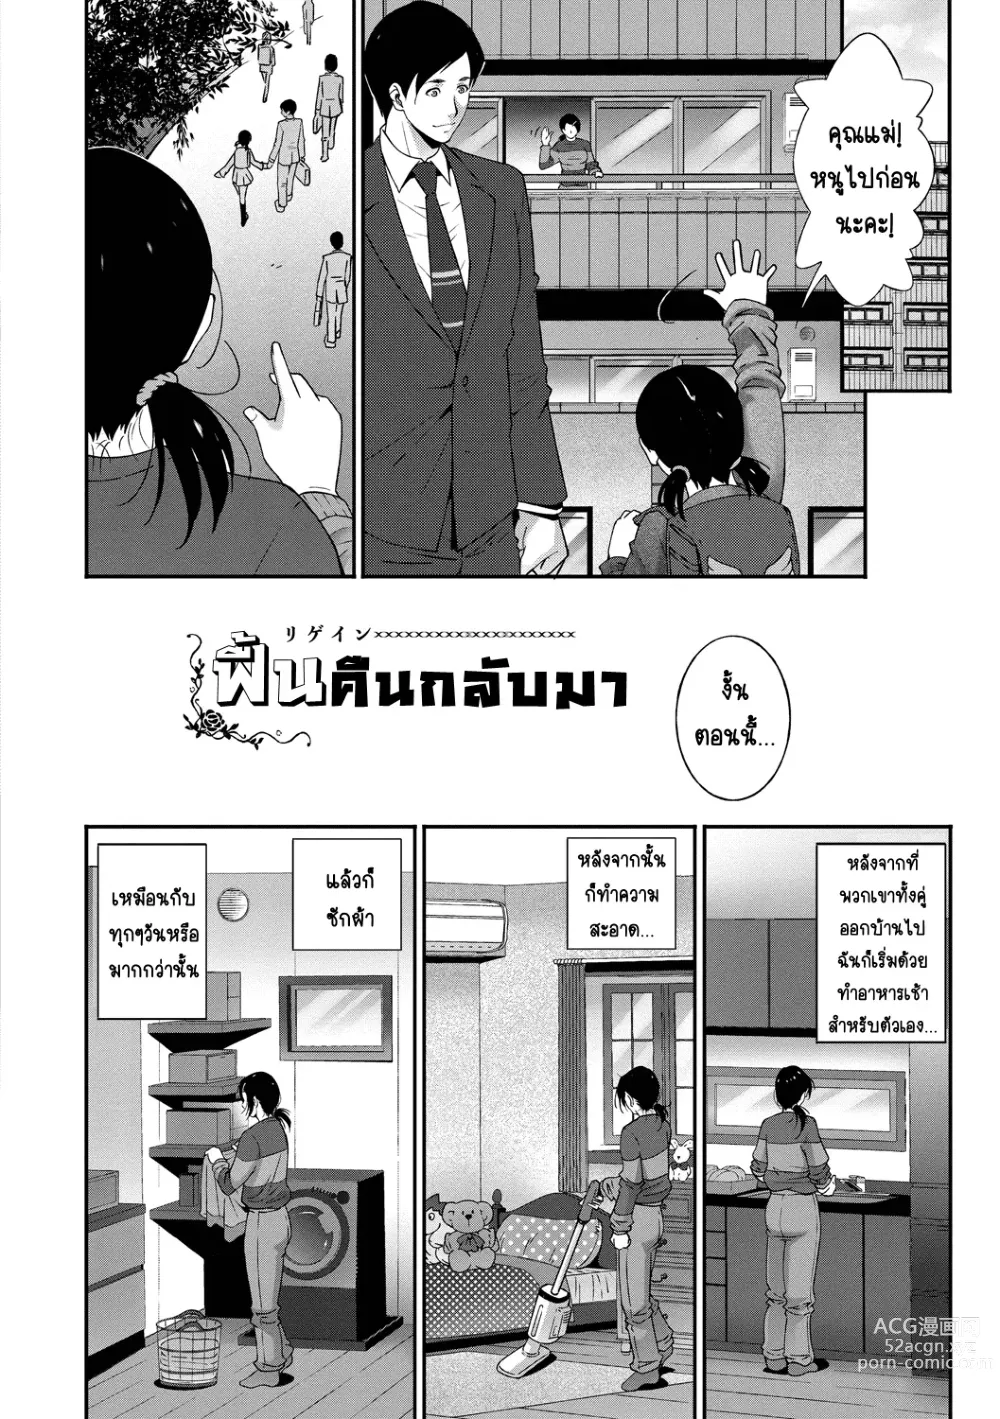 Page 3 of manga ฟื้นคืนกลับมา